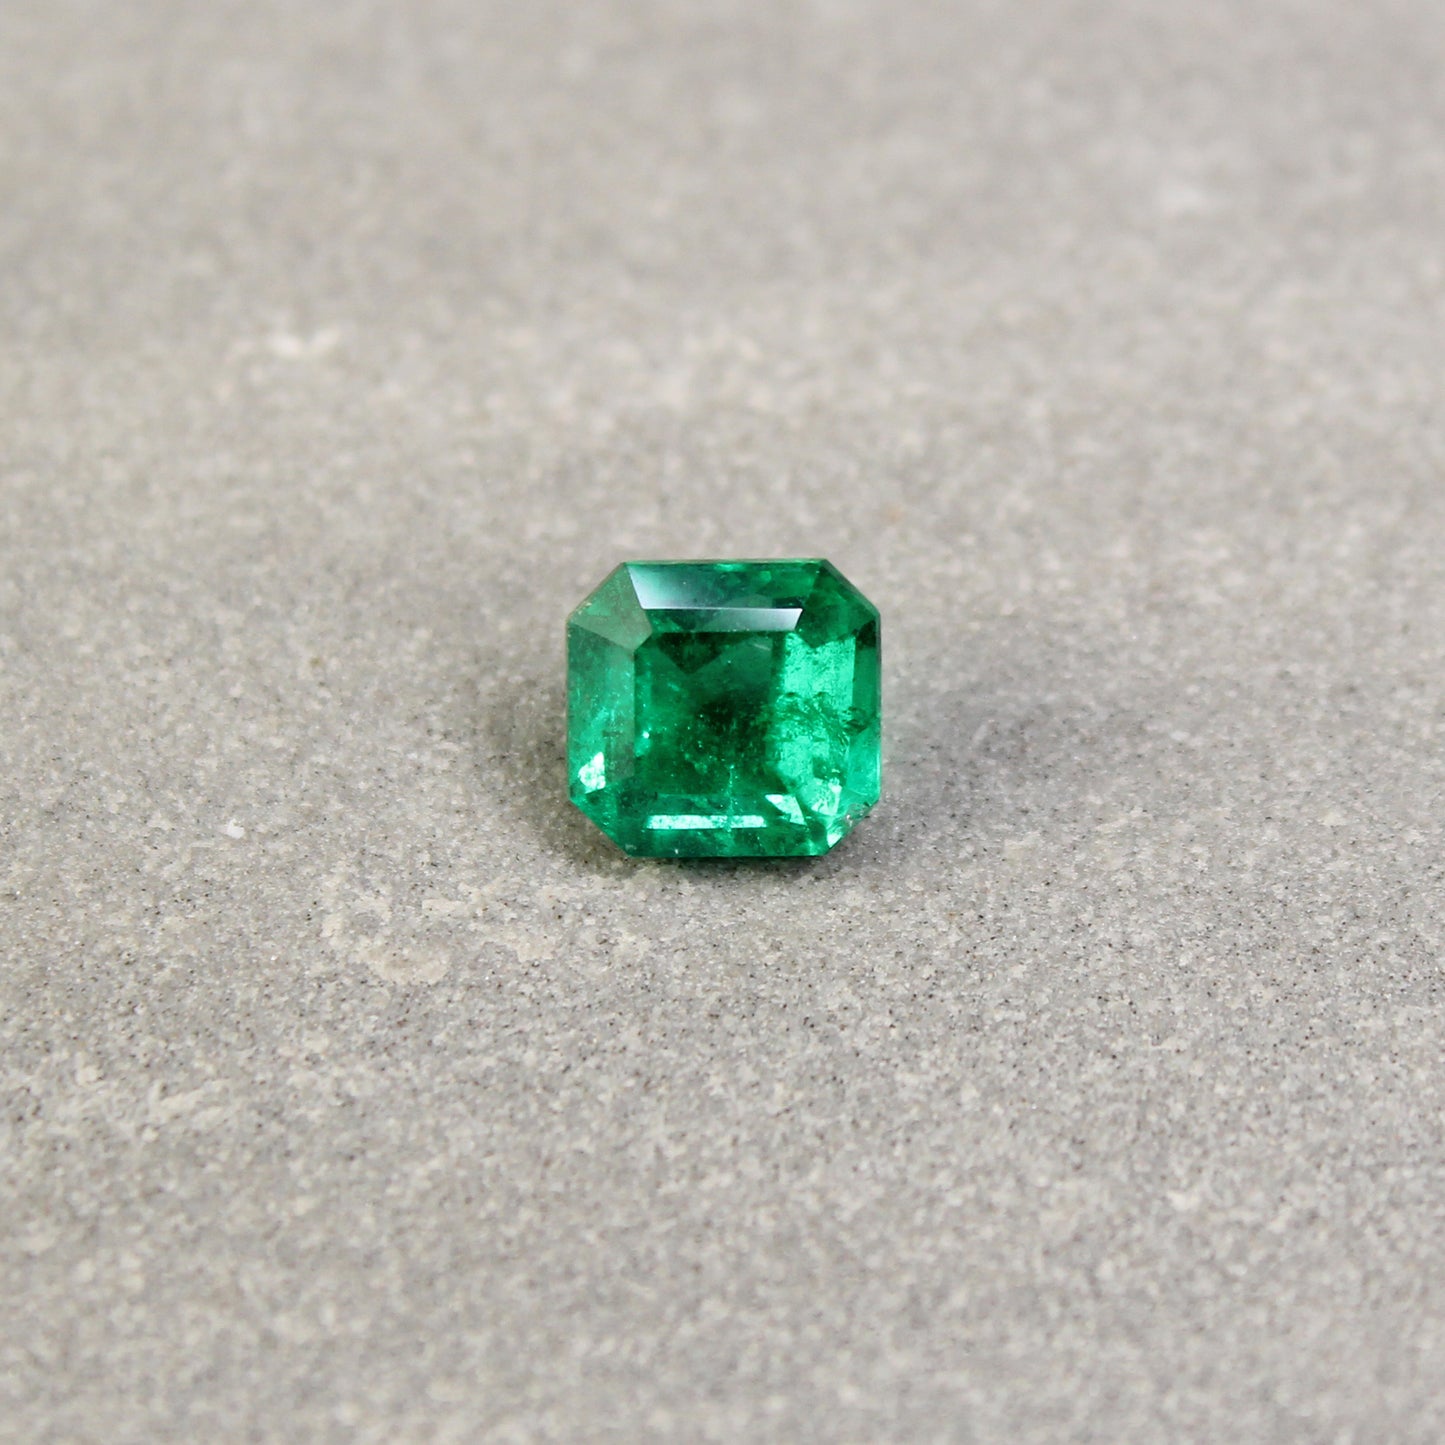 1.68ct Octagon Emerald, Minor Oil, Zambia - 7.09 x 6.71 x 5.07mm